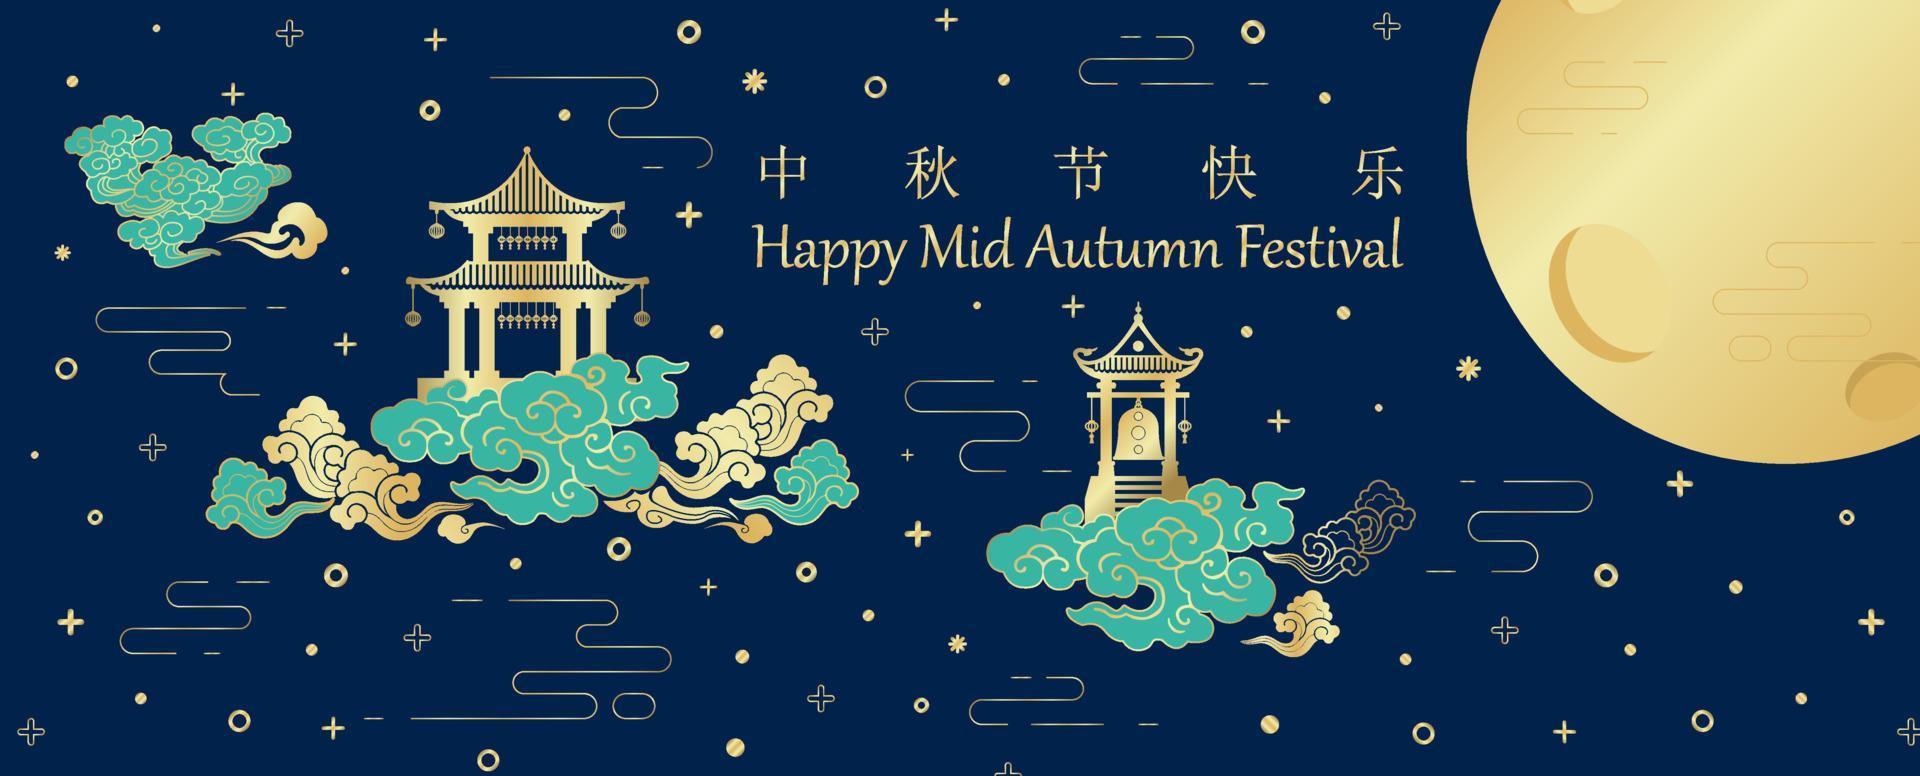 bâtiments anciens chinois sur nuages avec chinois et le nom des lettres d'événement, lune dorée géante sur motif d'étoiles et fond bleu foncé. le lettrage chinois signifie festival de la mi-automne en anglais. vecteur